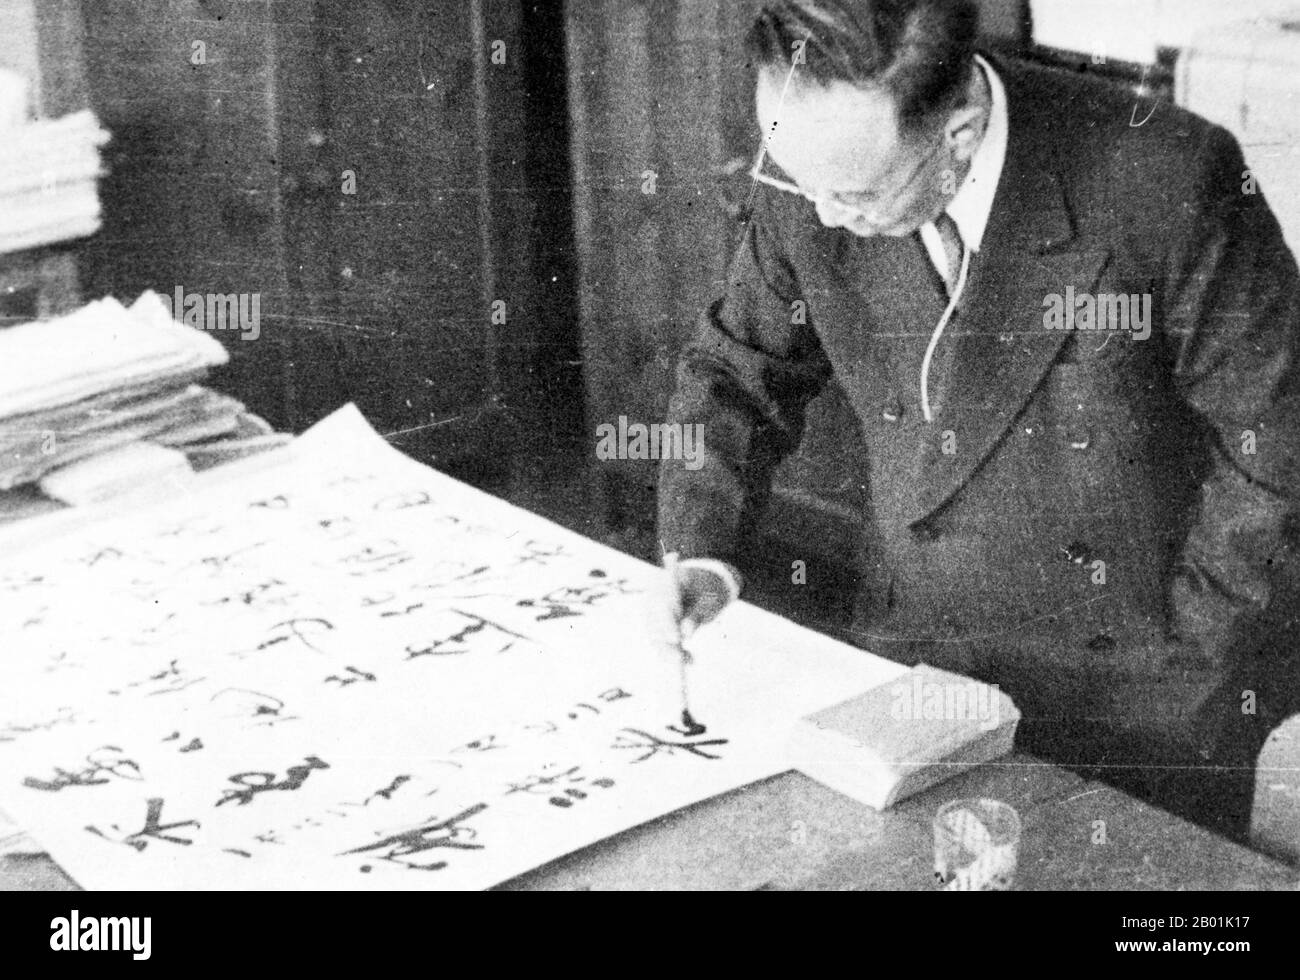 Chine : Guo Morou (16 novembre 1892 - 12 juin 1978), écrivain, historien et intellectuel chinois, démontrant sa calligraphie, v. 1950. Guo Moruo, nommé à l'origine Guo Kaizhen et nommé de courtoisie Dingtang (鼎堂?), est un auteur, poète, historien, archéologue et fonctionnaire du gouvernement chinois du Sichuan, en Chine. Banque D'Images